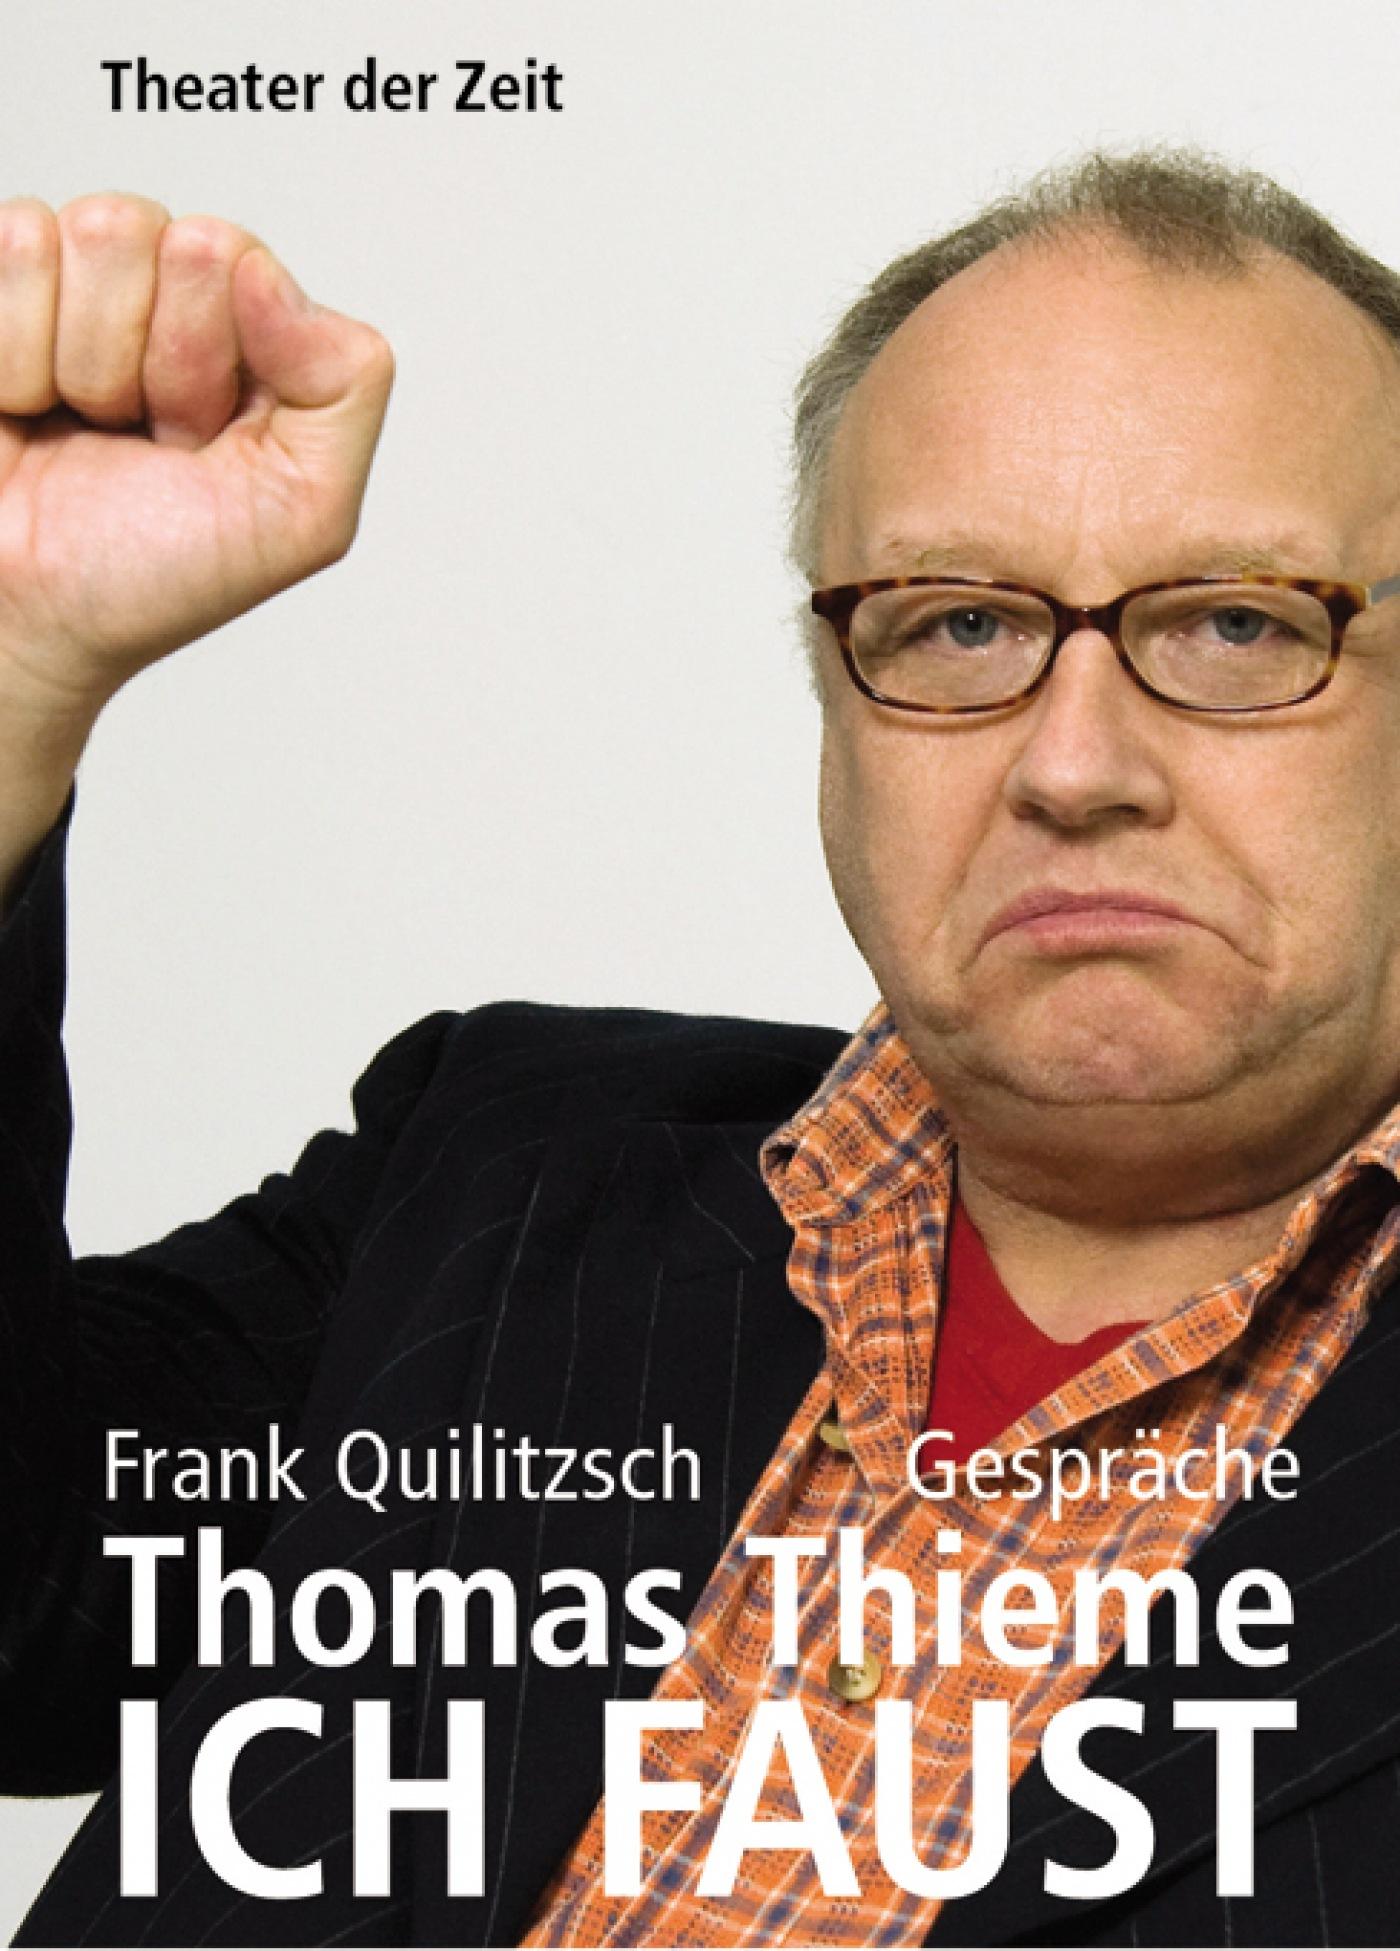 "ICH FAUST - Thomas Thieme"